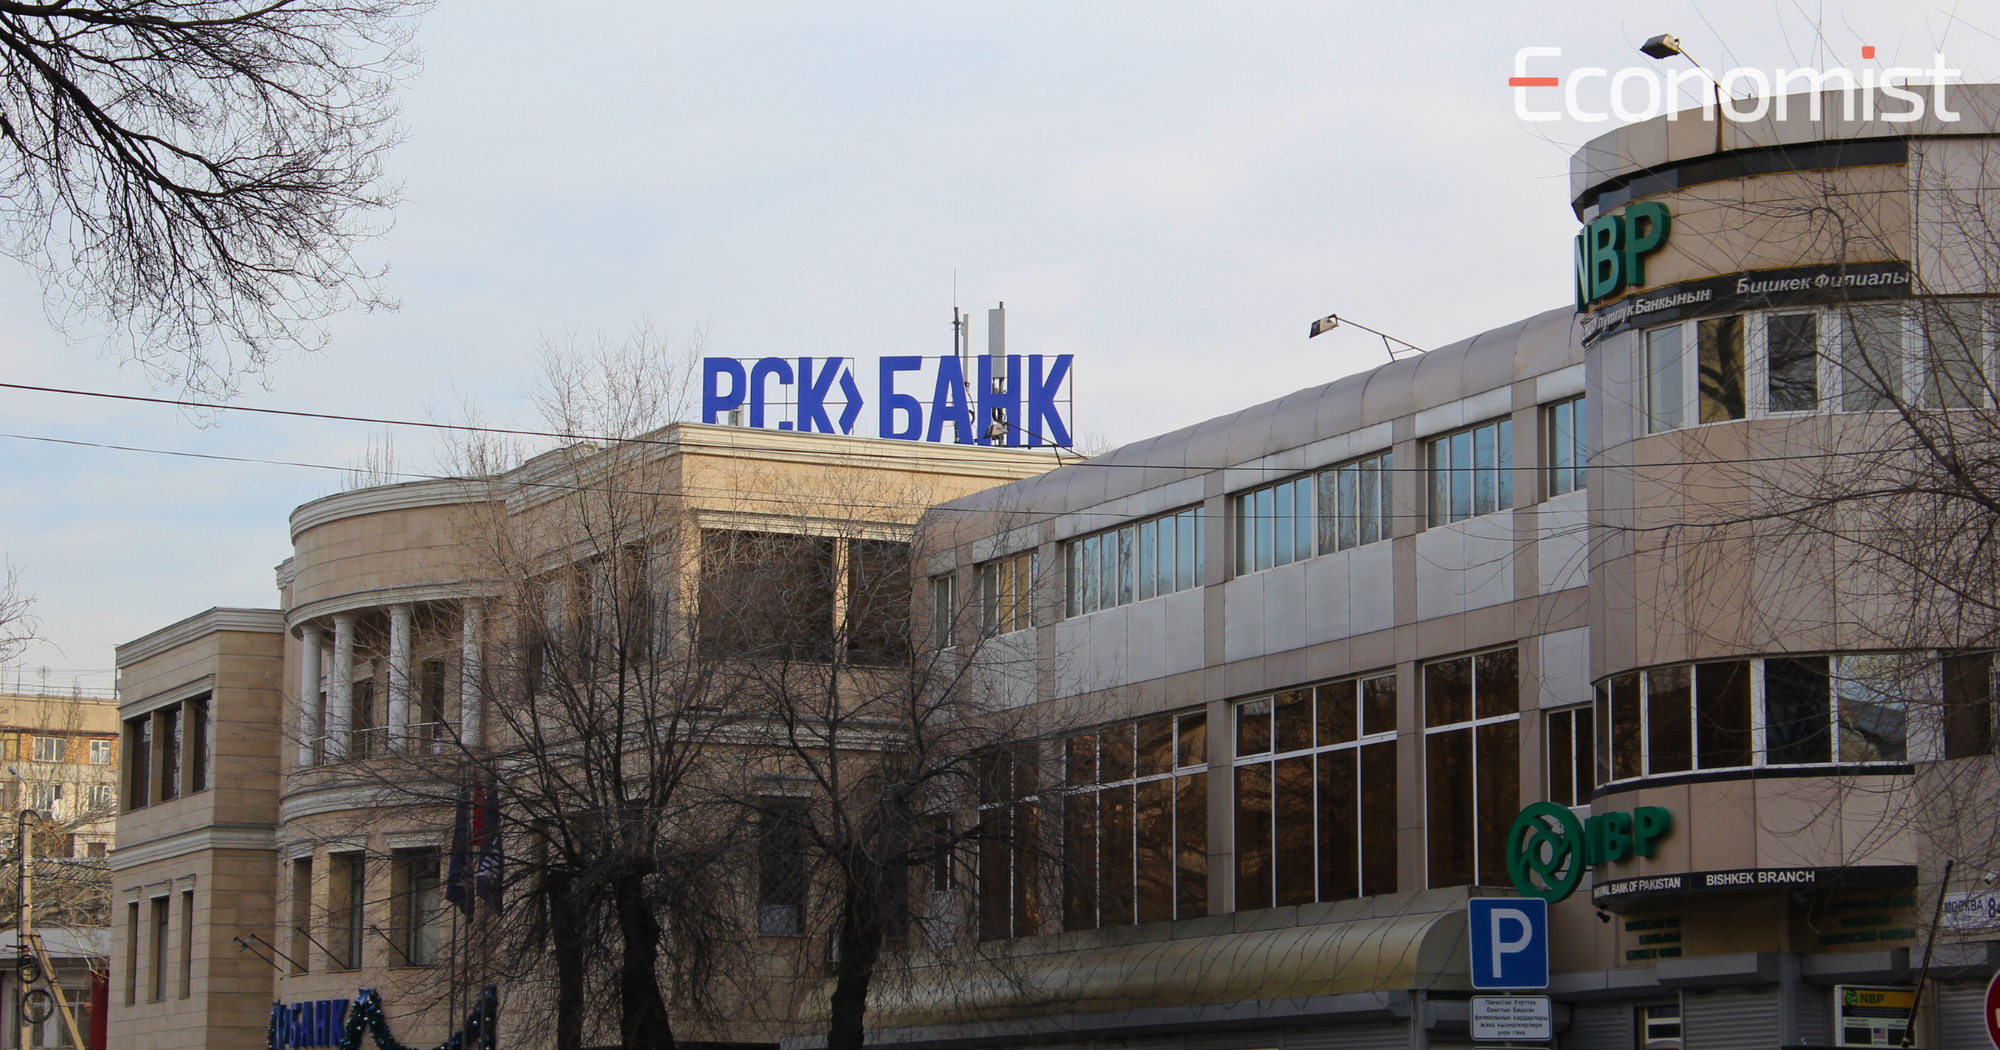 «РСК банк» будет переименован в «Элдик банк» в течение двух недель – Садыр Жапаров